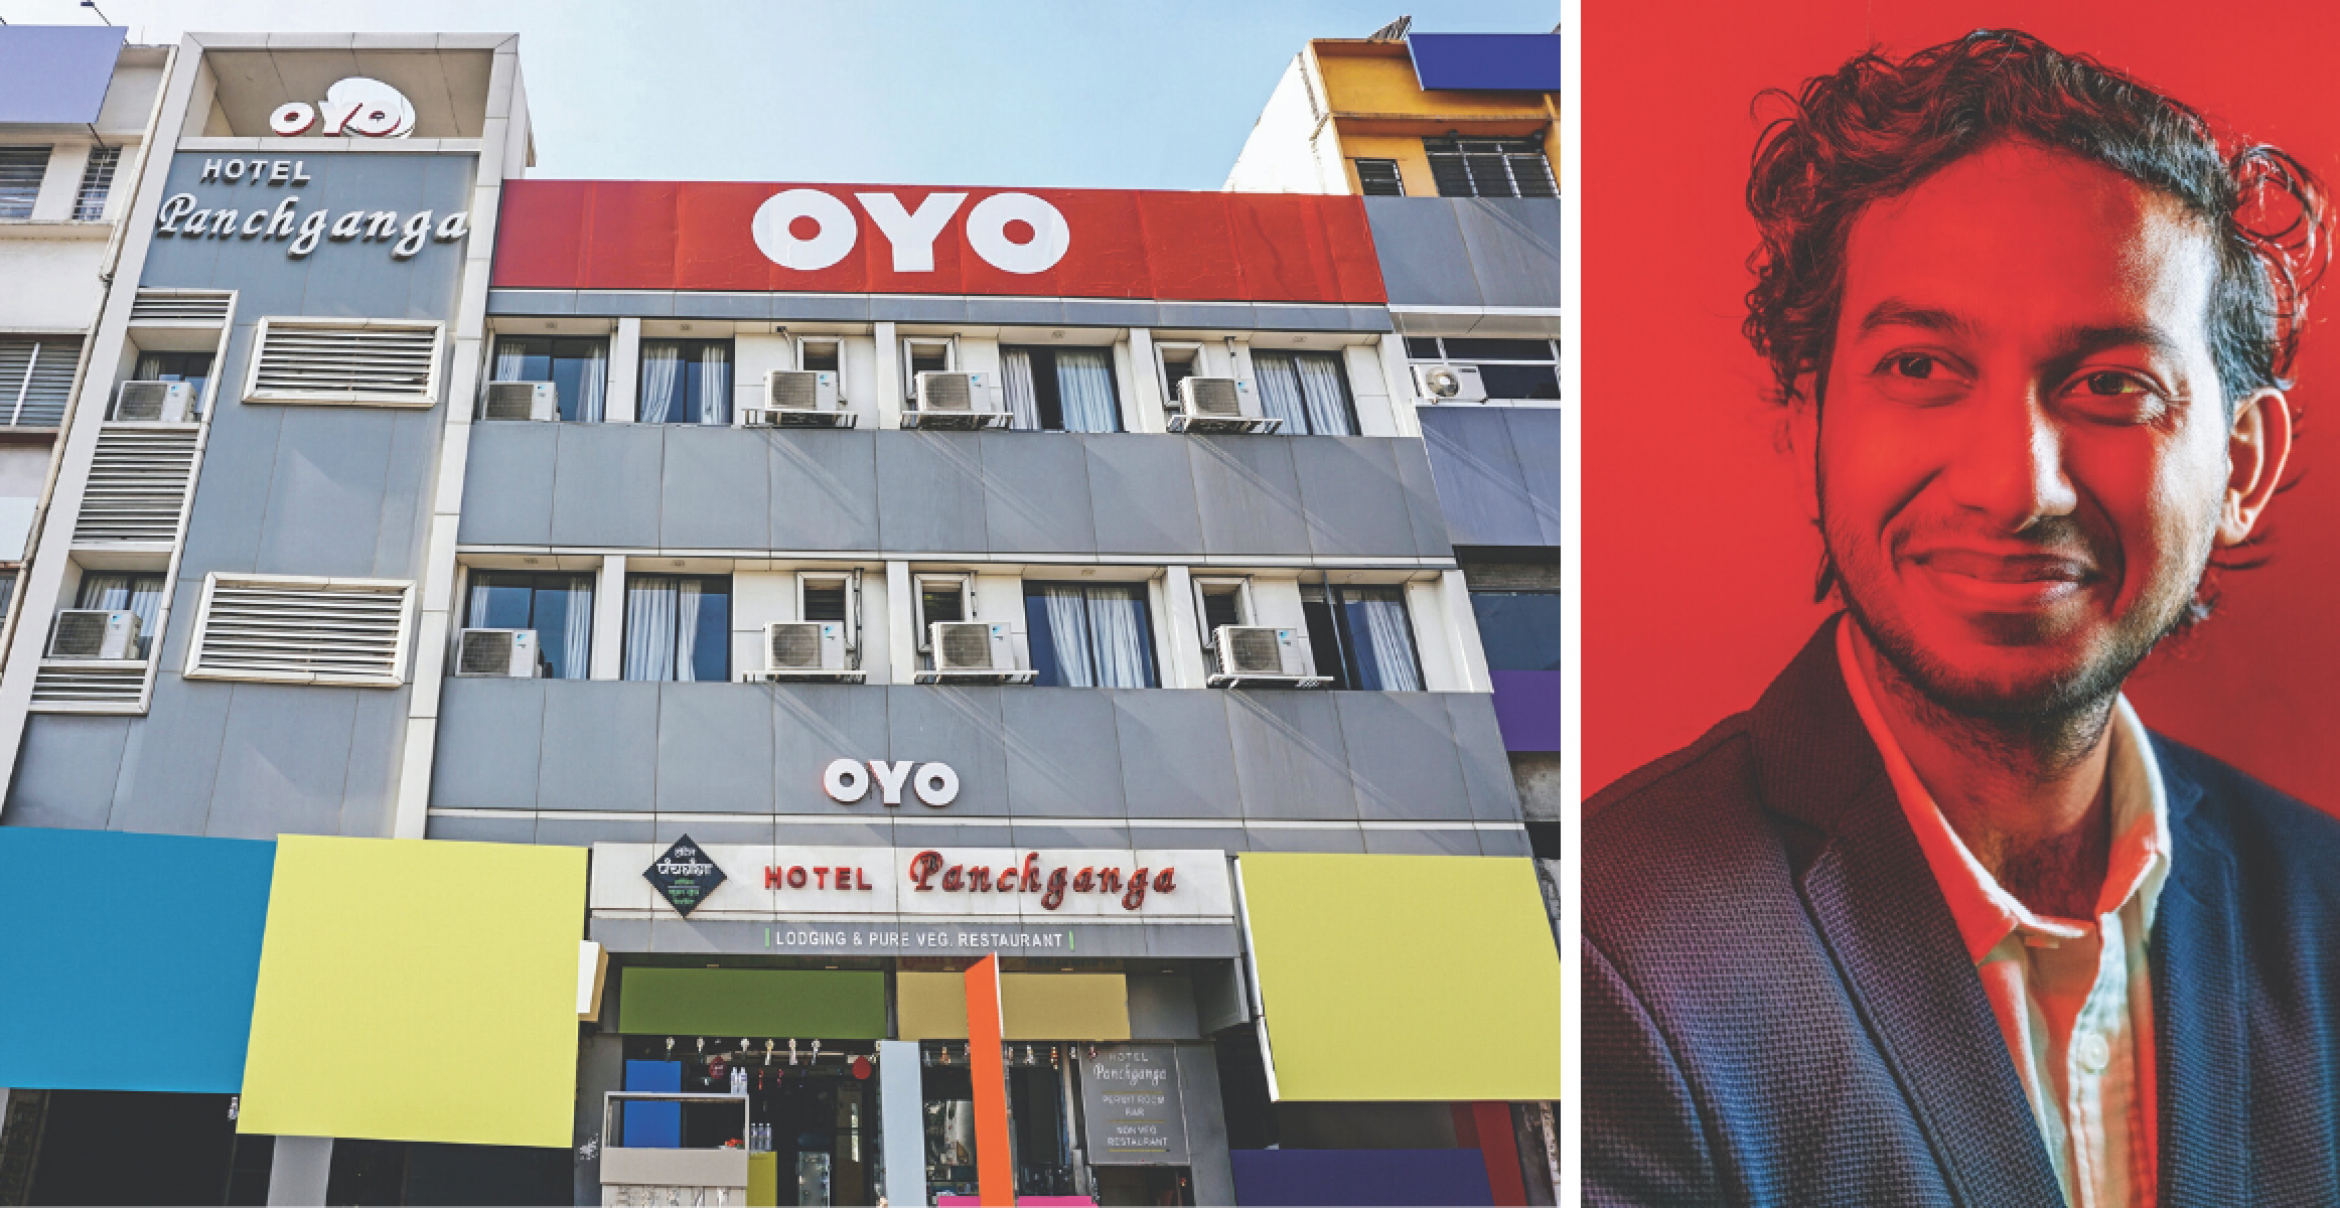 Wie das indische Startup Oyo den europäischen Hotelmarkt aufrollen will